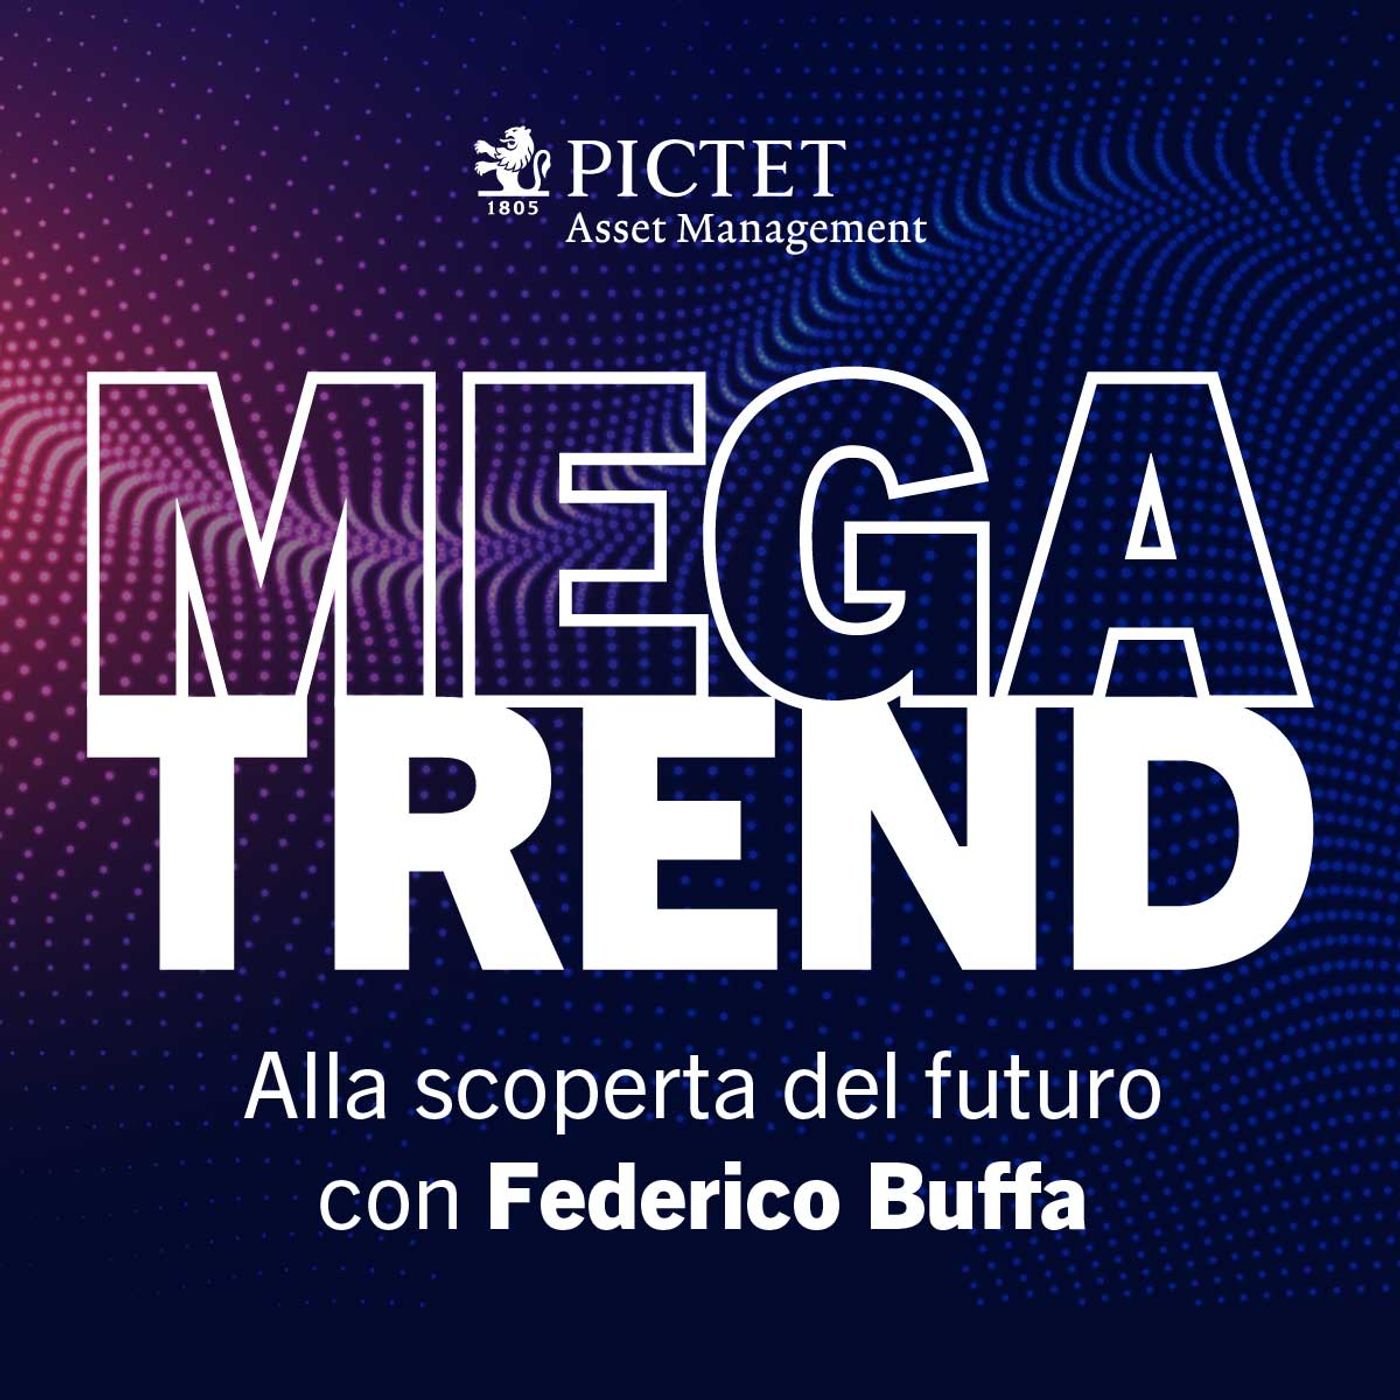 Megatrend – Alla scoperta del futuro con Federico Buffa